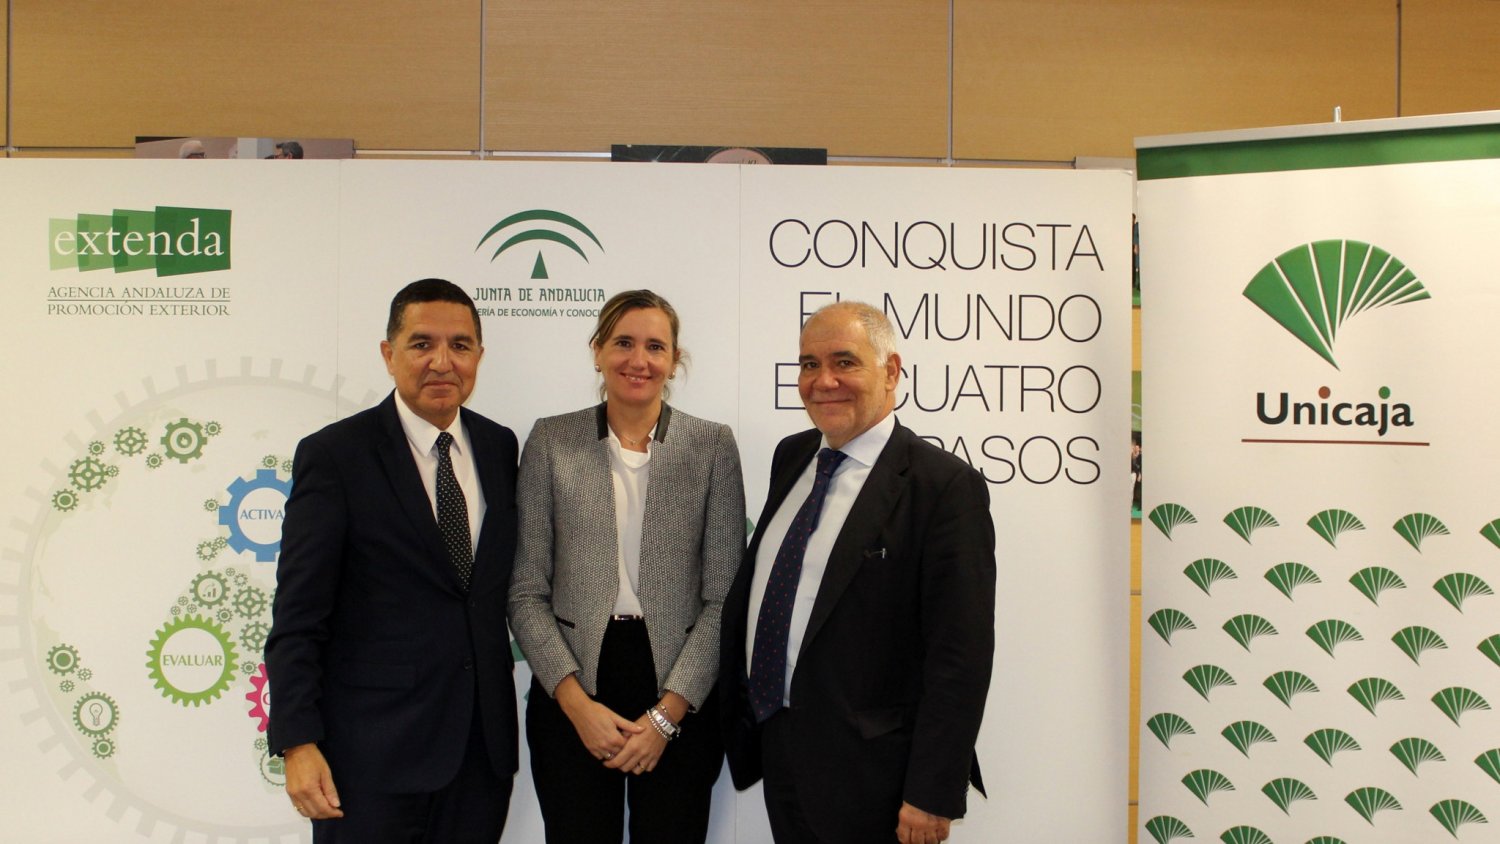 Unicaja y Extenda firman un convenio para impulsar la promoción de las empresas andaluzas en el extranjero